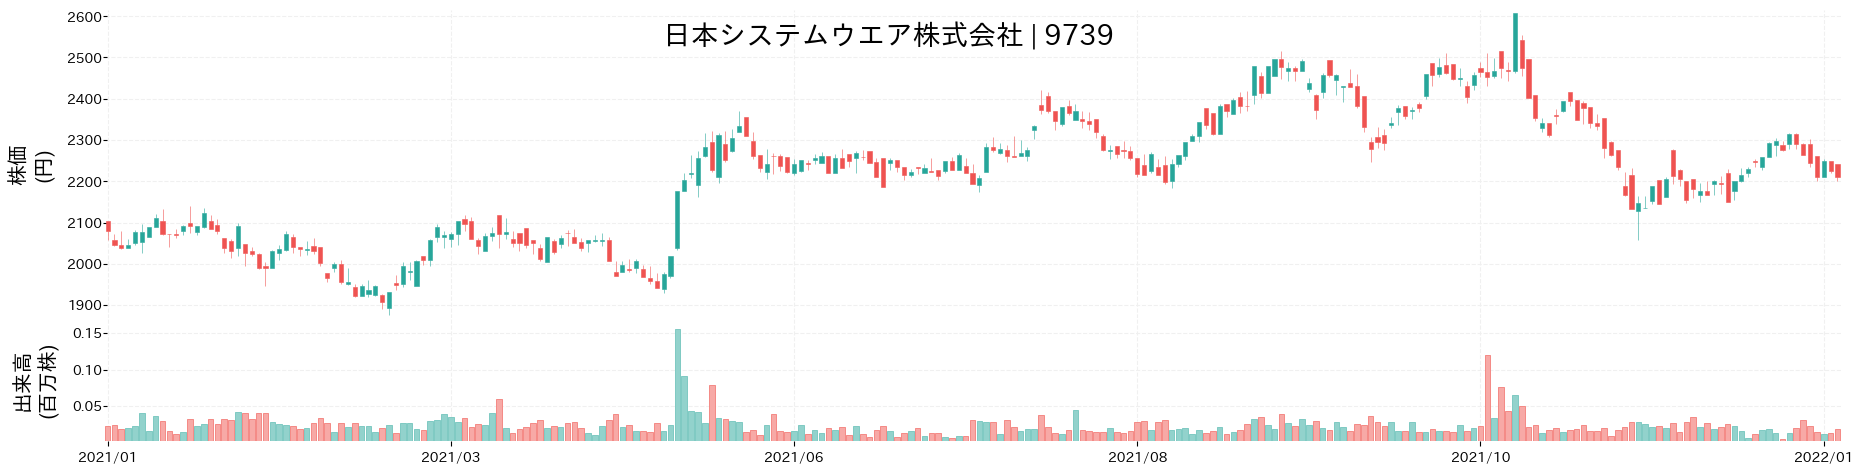 日本システムウエアの株価推移(2021)